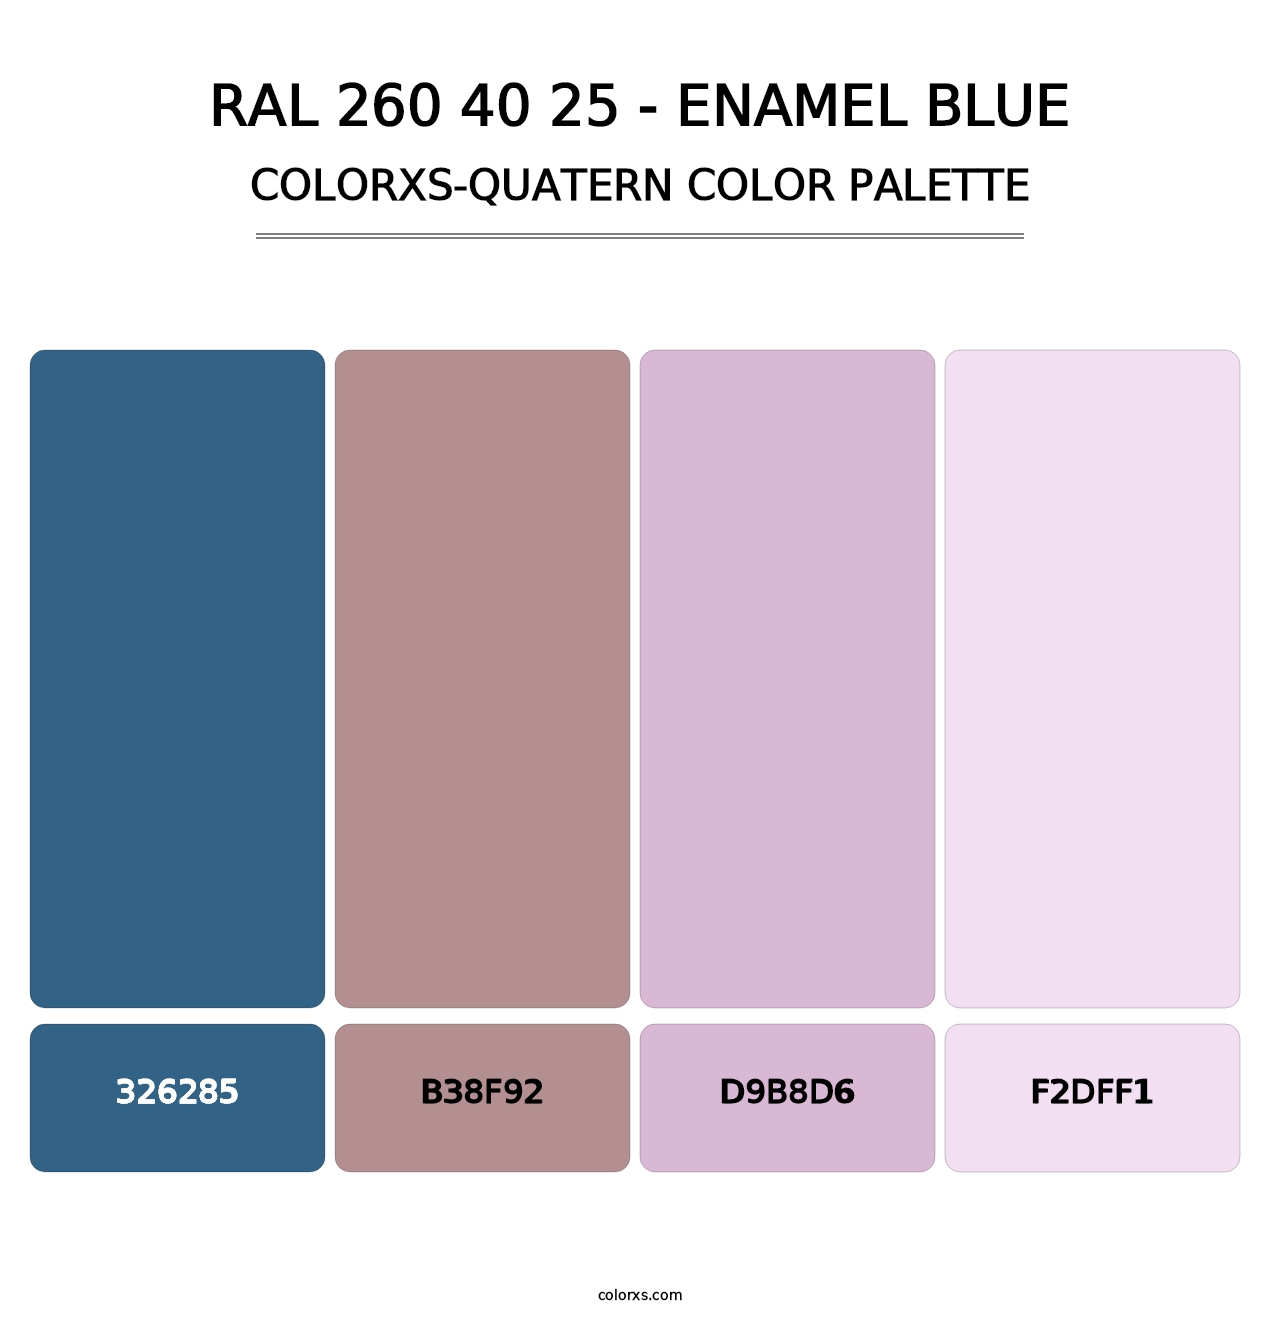 RAL 260 40 25 - Enamel Blue - Colorxs Quatern Palette